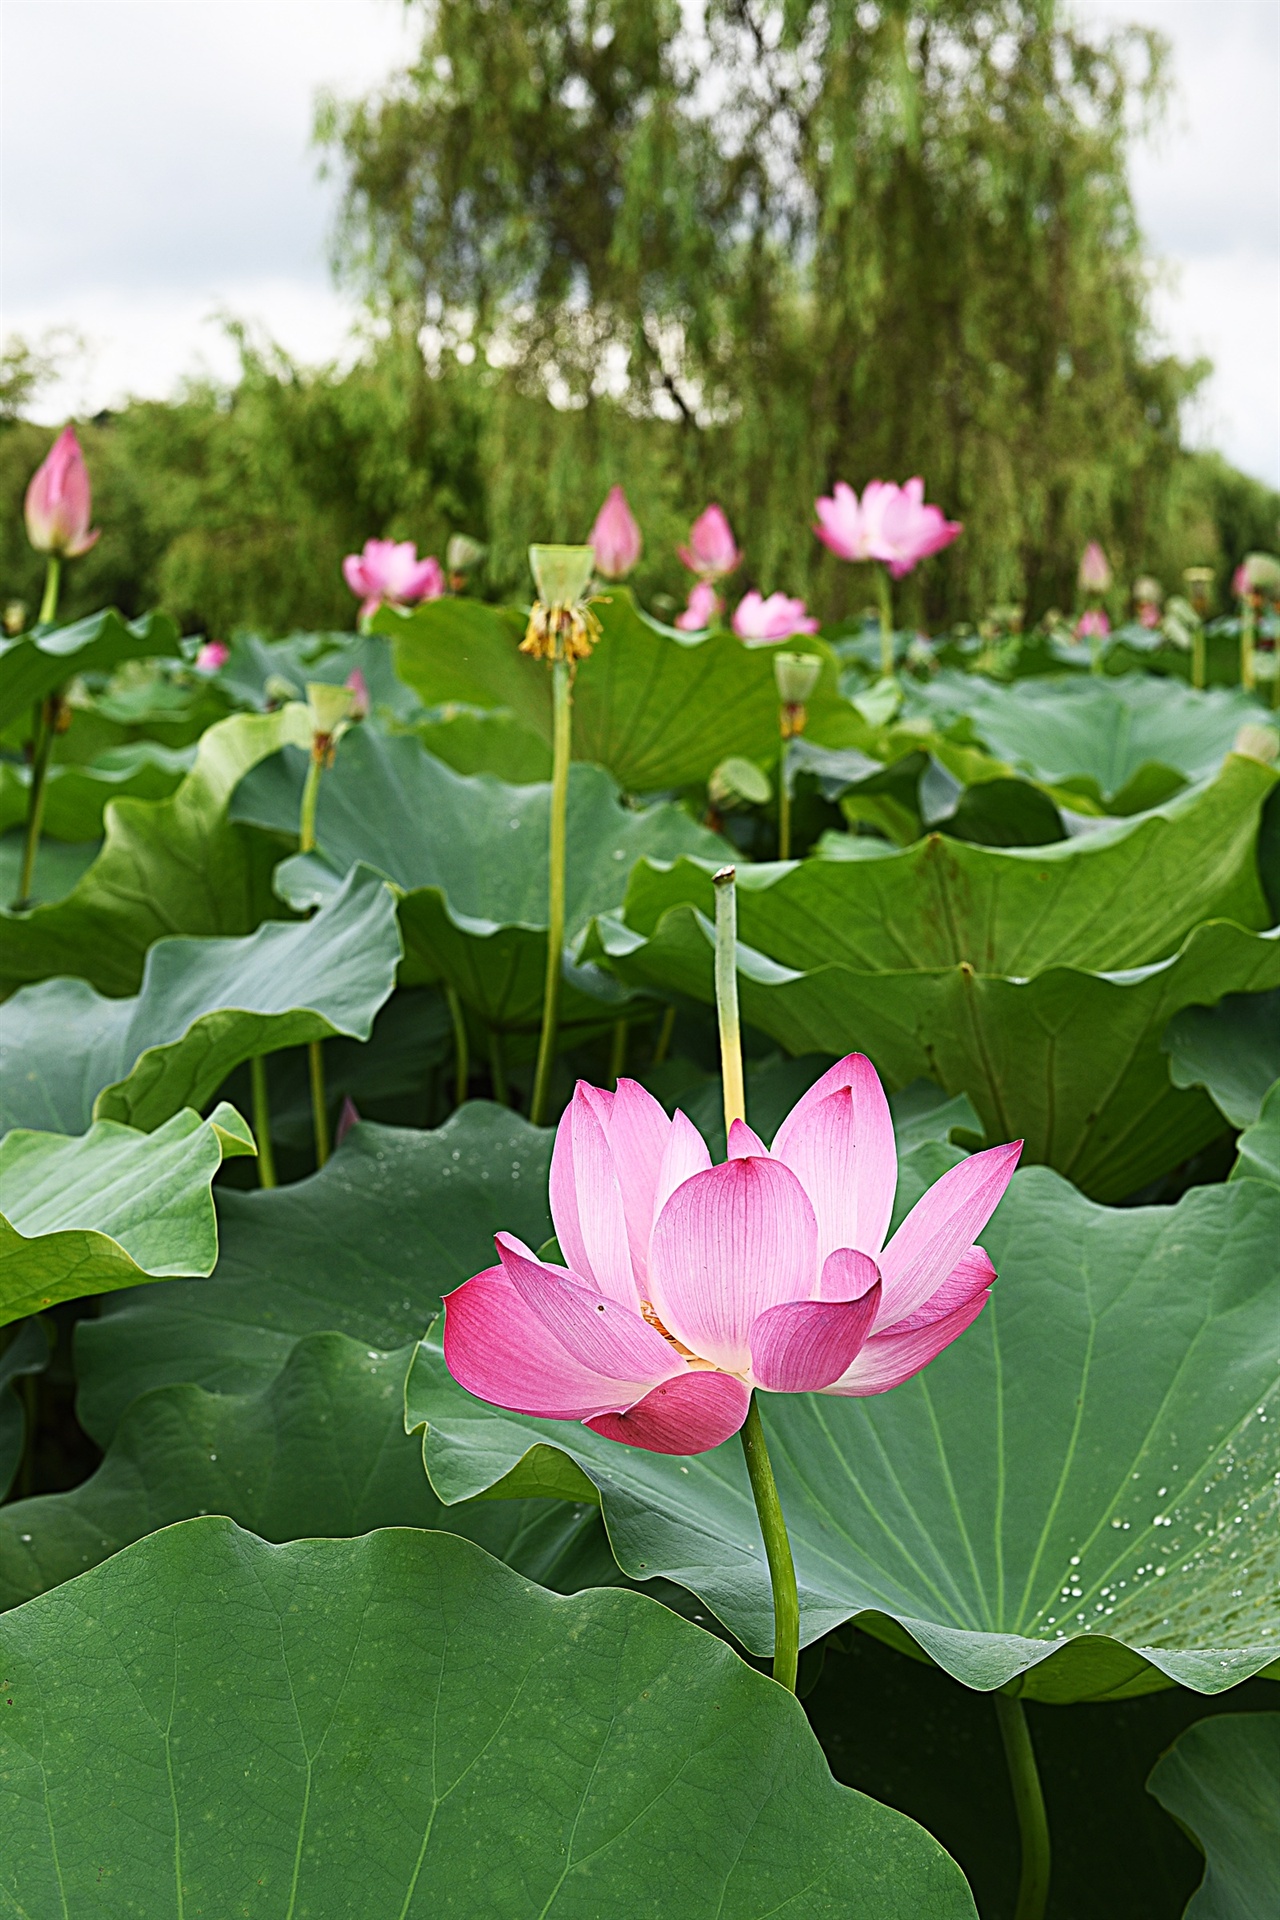 우리나라에서 가장 오래된 인공 연못 궁남지 연꽃 단지의 홍련 